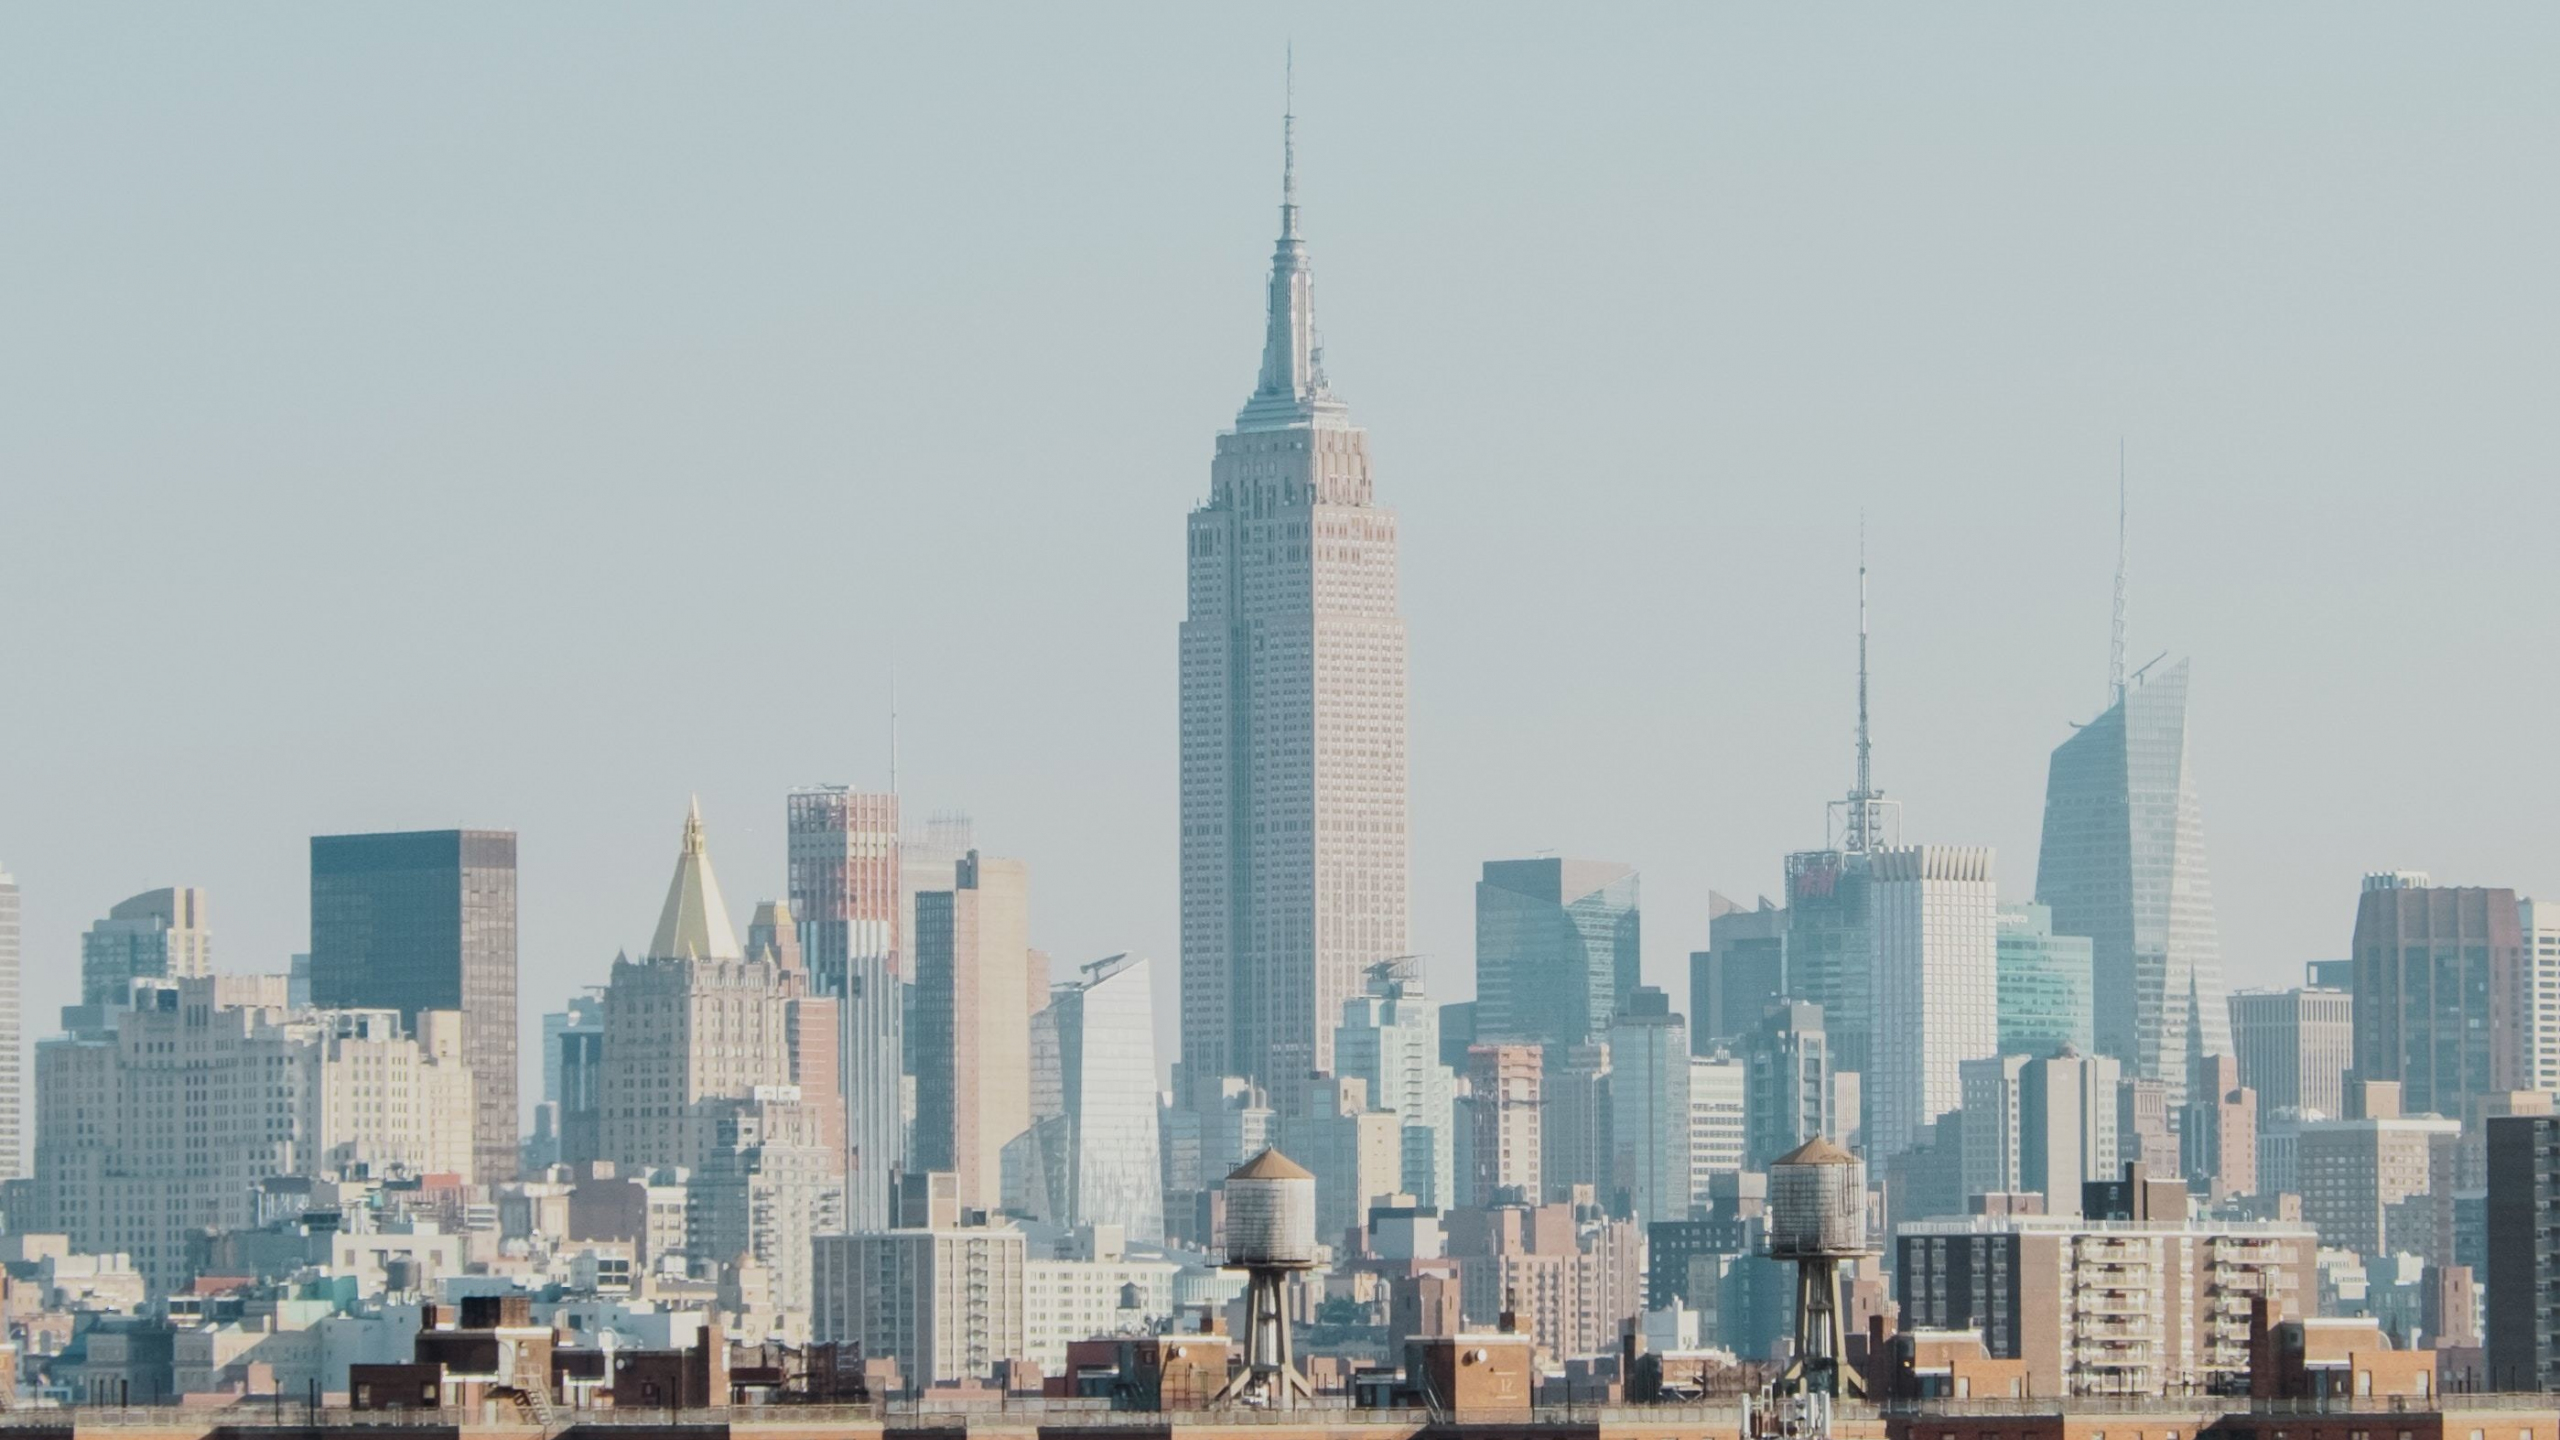 Download 2560x1440 Wallpaper Empire State Building Cityscape